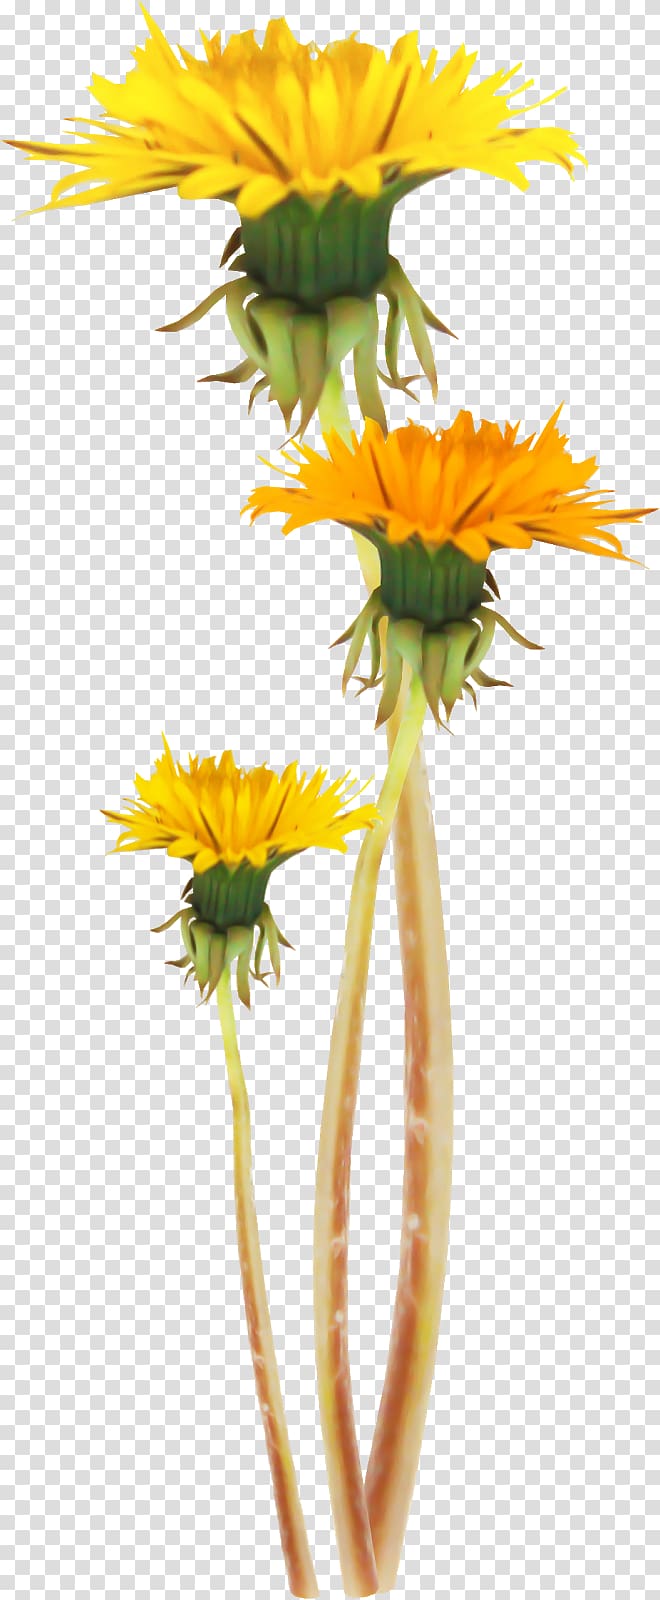 Common sunflower Dandelion Plant stem , dandelion transparent background PNG clipart